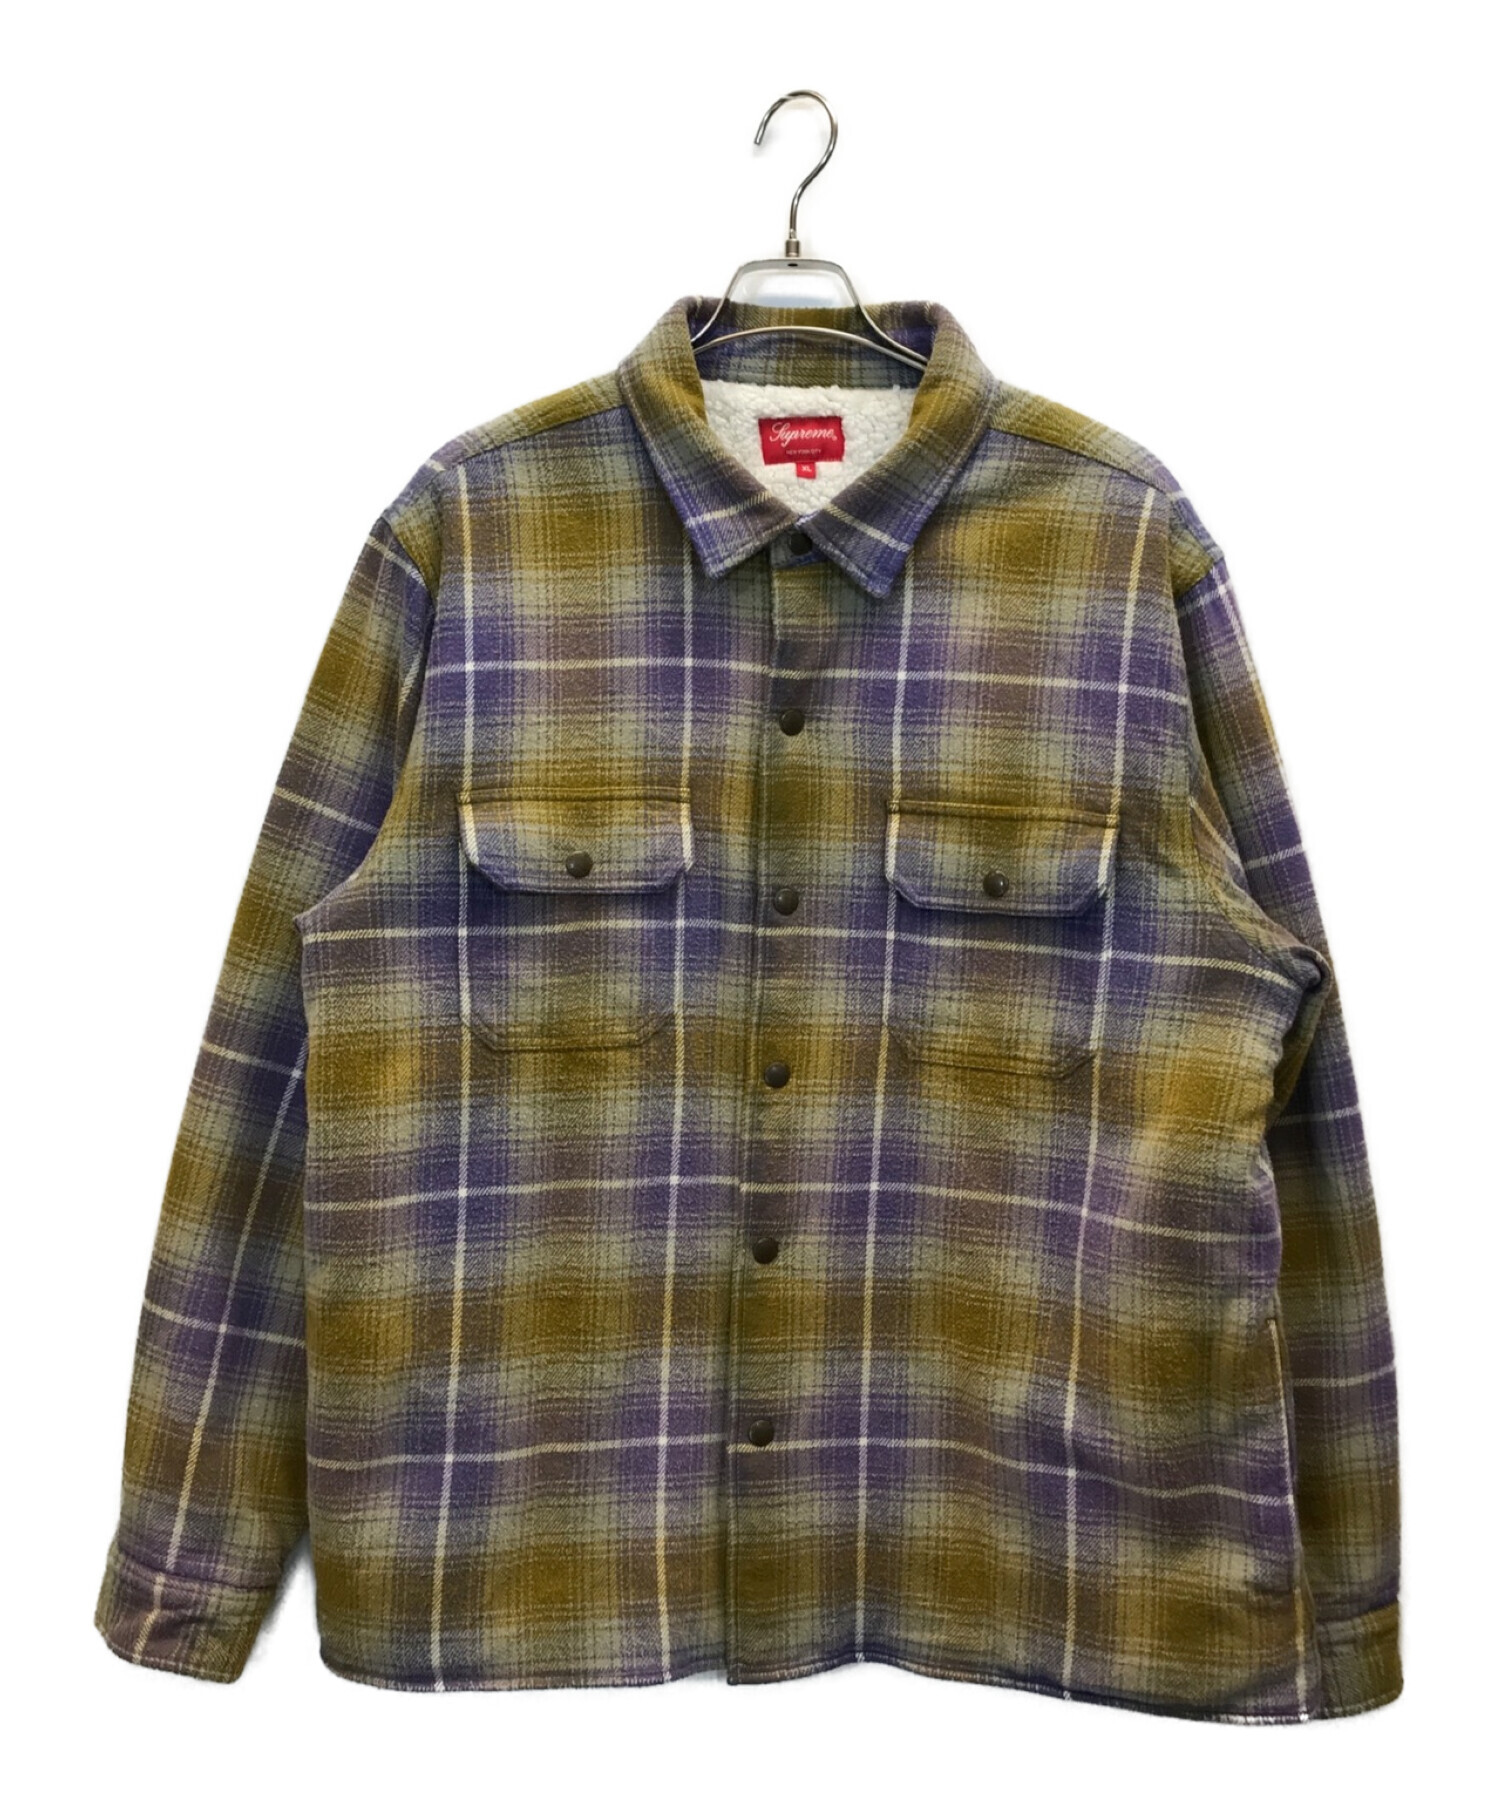 SUPREME (シュプリーム) 22AW Shearling Lined Flannel Shirt 裏ボアフランネルシャツジャケット  ベージュ×パープル サイズ:XL